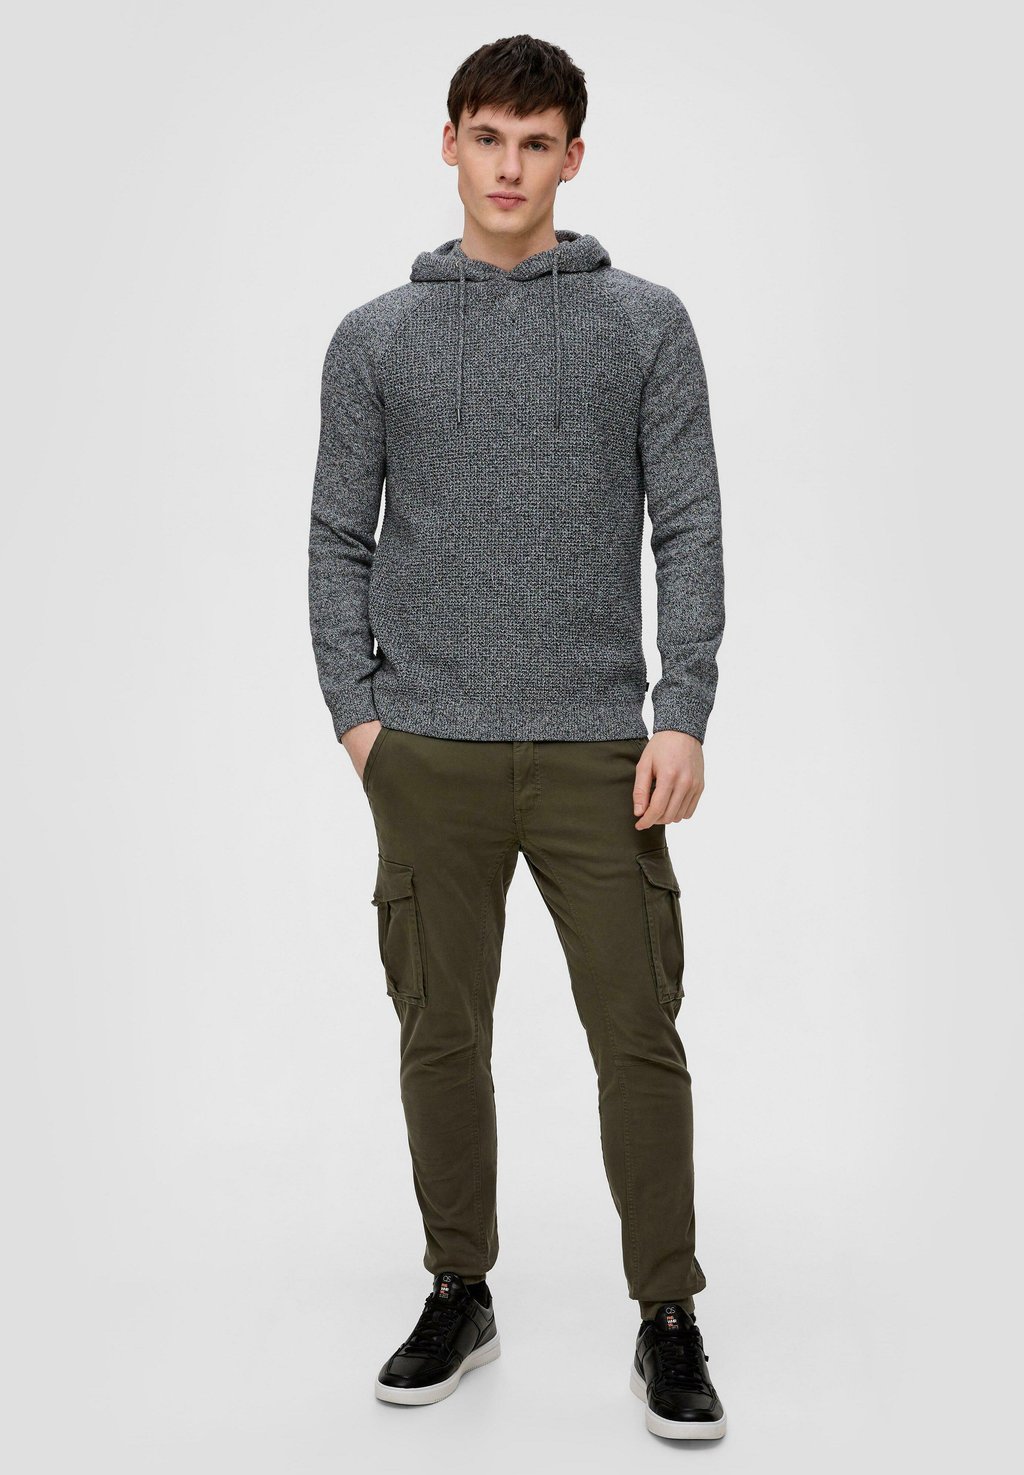 Вязаный свитер QS, цвет schwarz вязаный свитер qs цвет schwarz